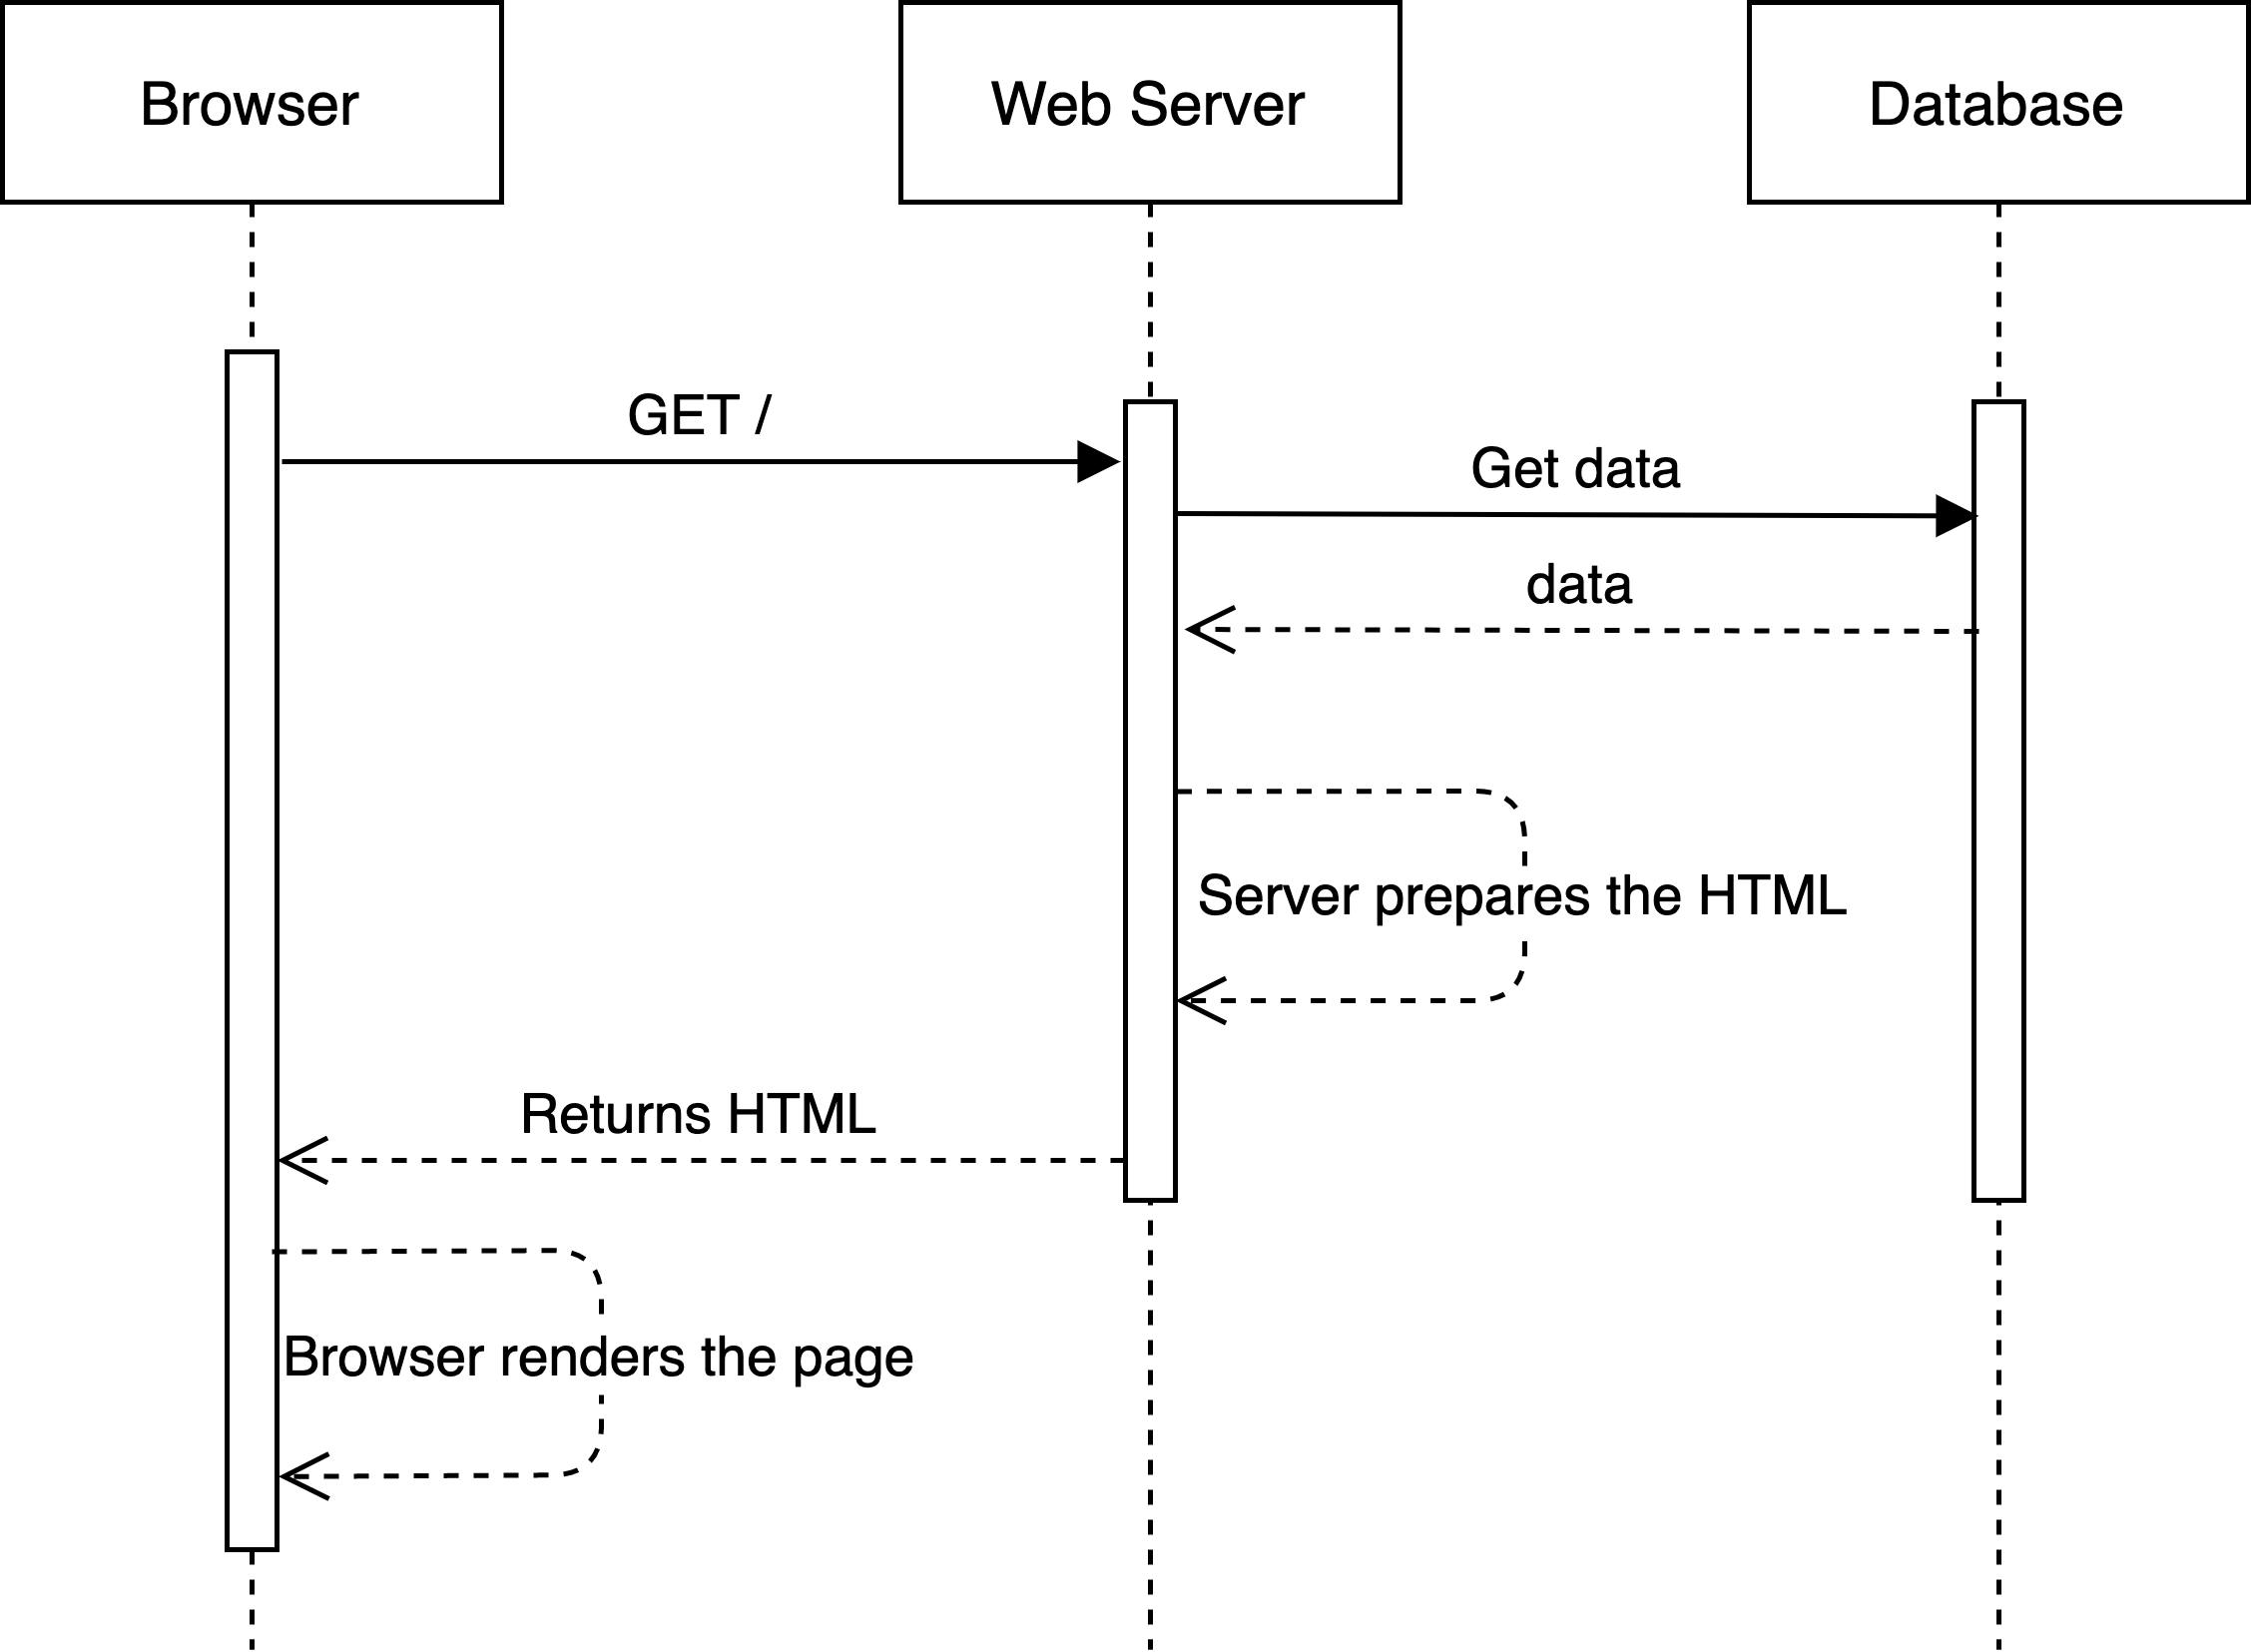 Server Side Diagram